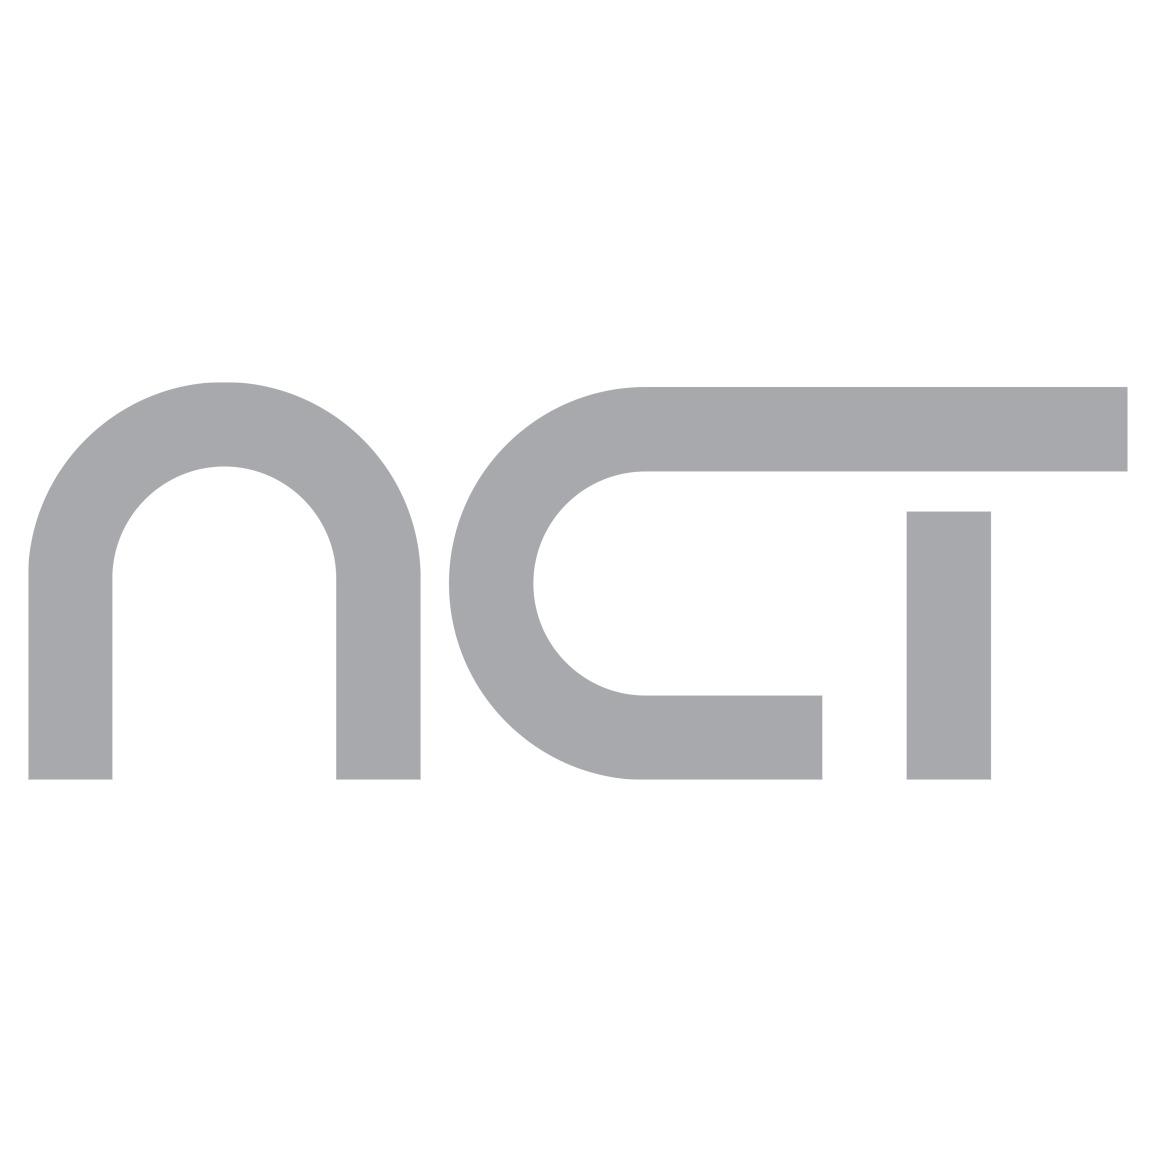 NCT Mauertrockenlegung Group GmbH Logo